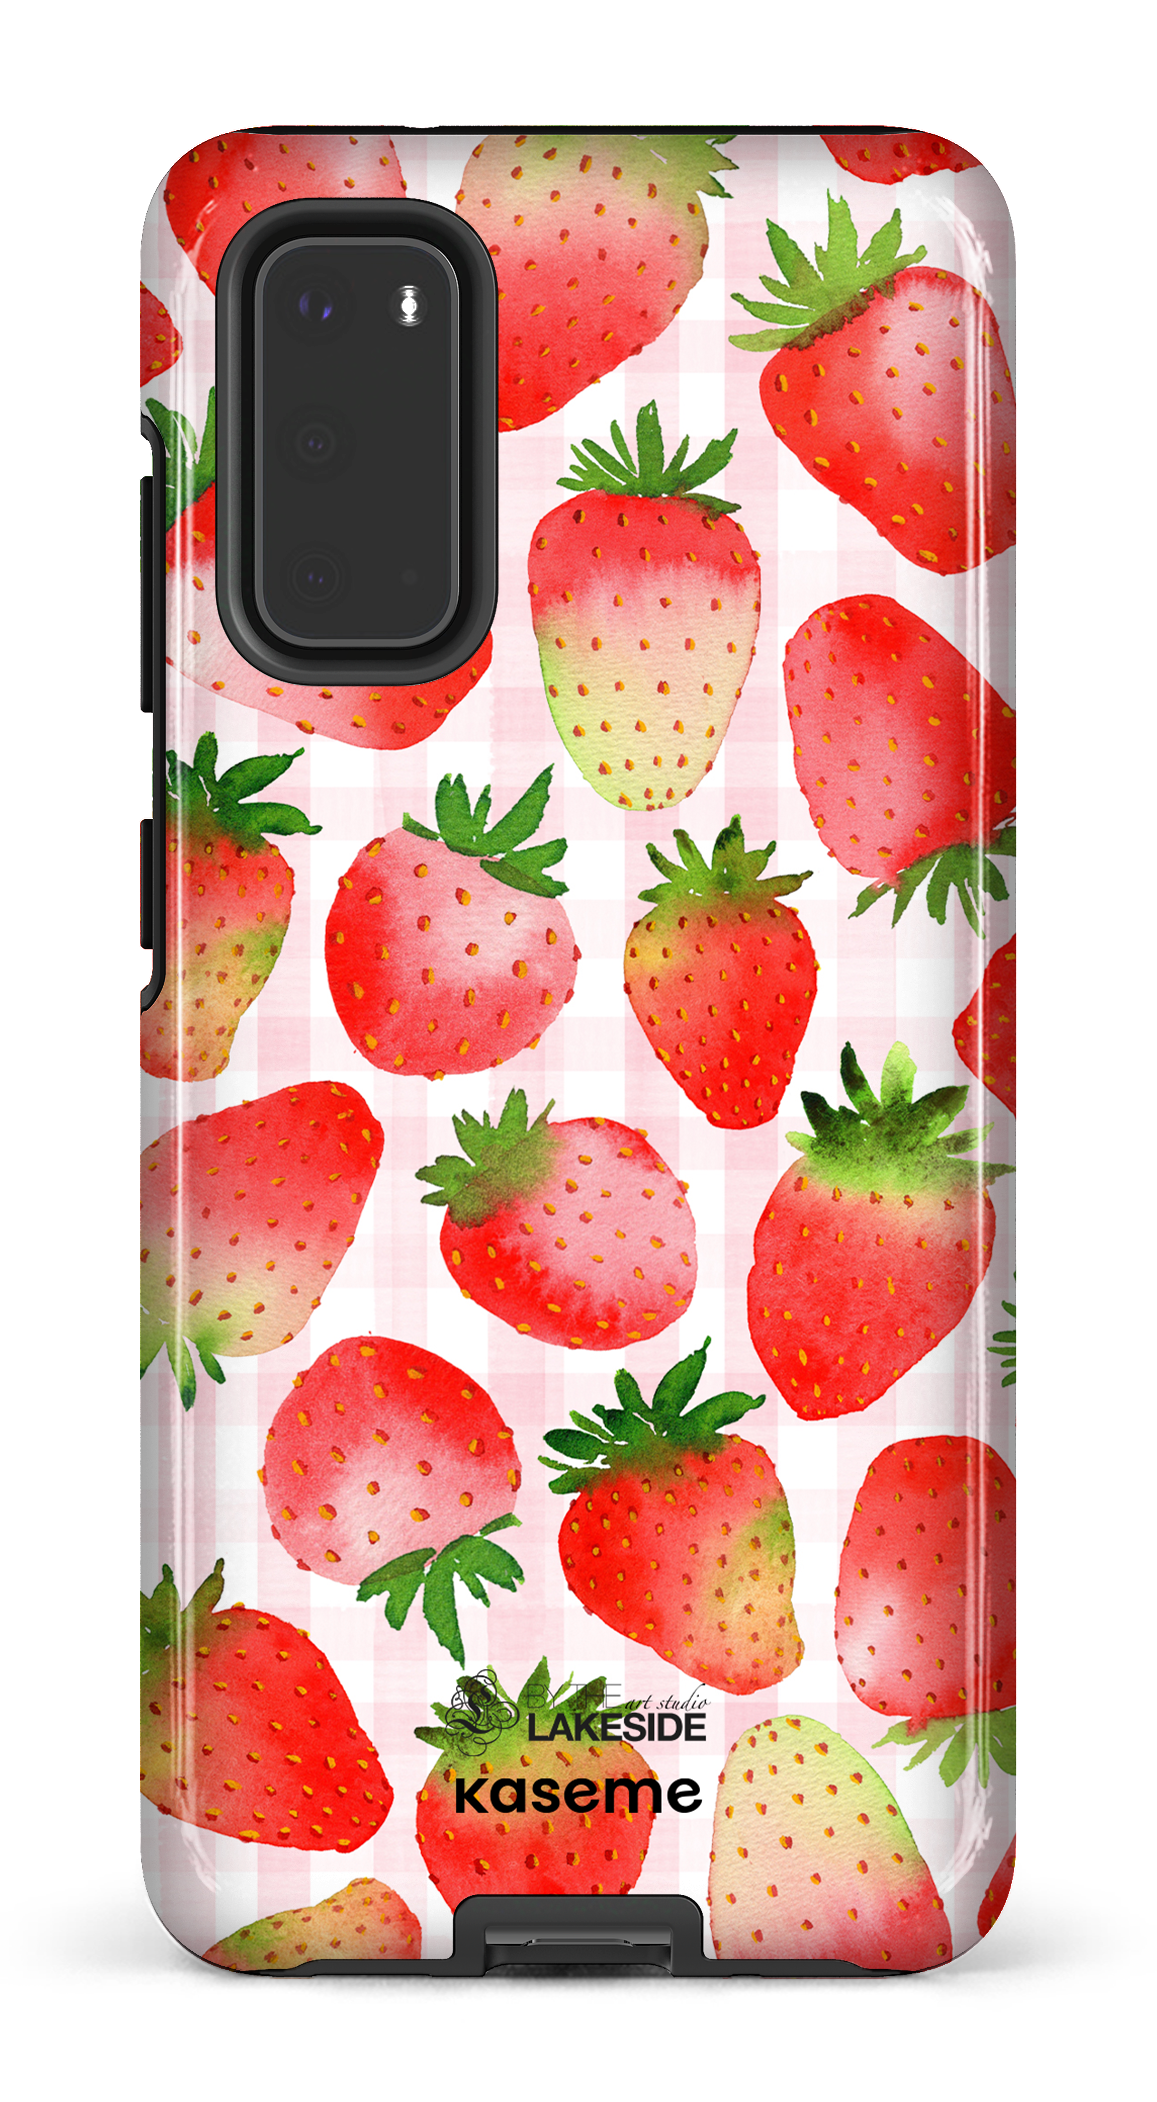 Strawberry Fields by Pooja Umrani - Galaxy S20